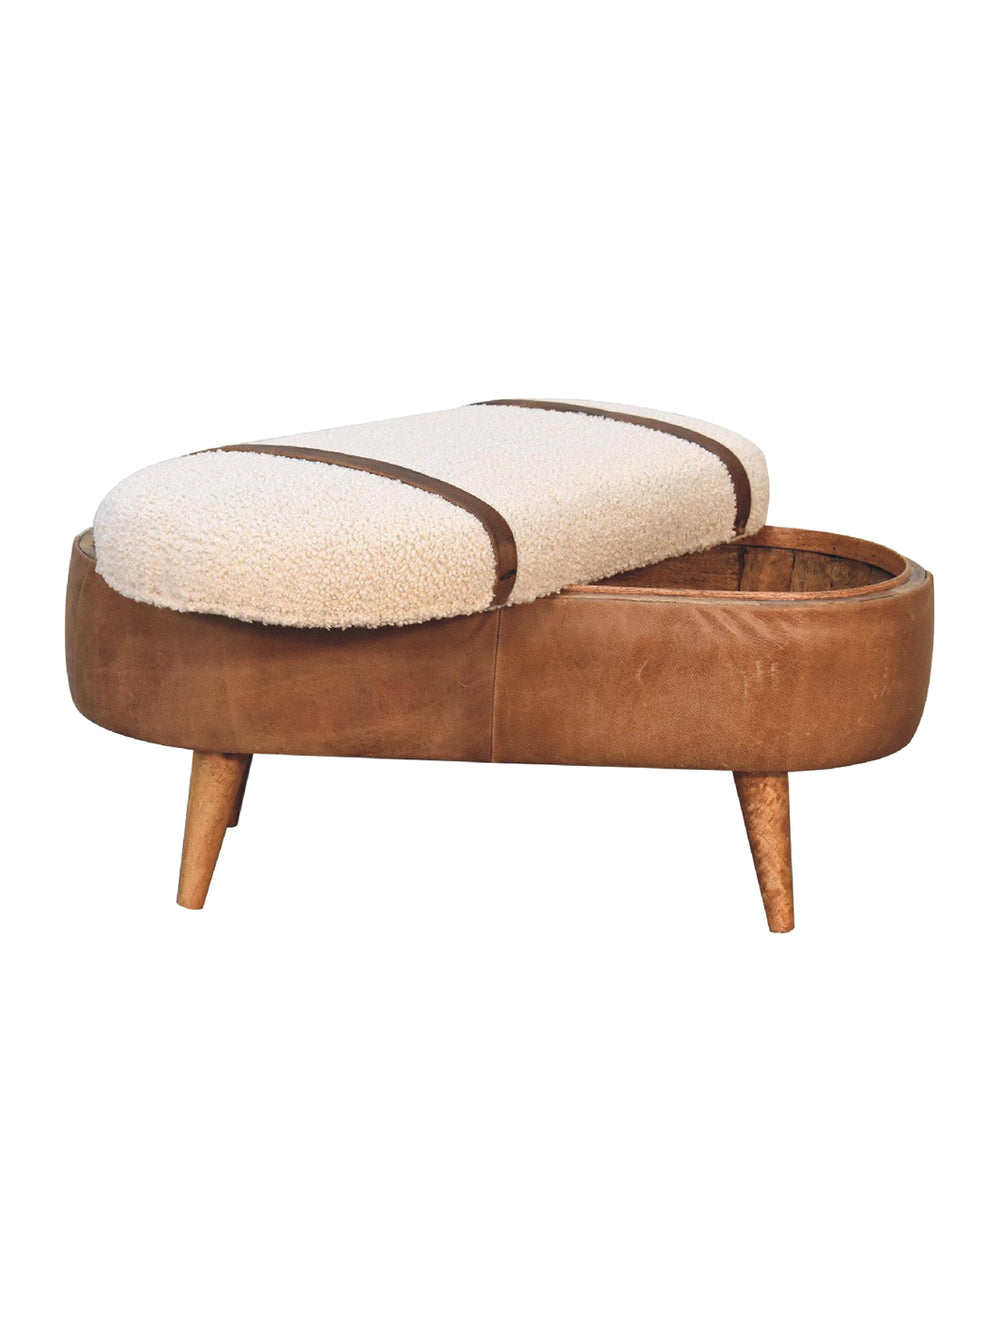 Tan Bufallo Leather Boucle Nordic Bench Artisan Furniture  IN3496-1